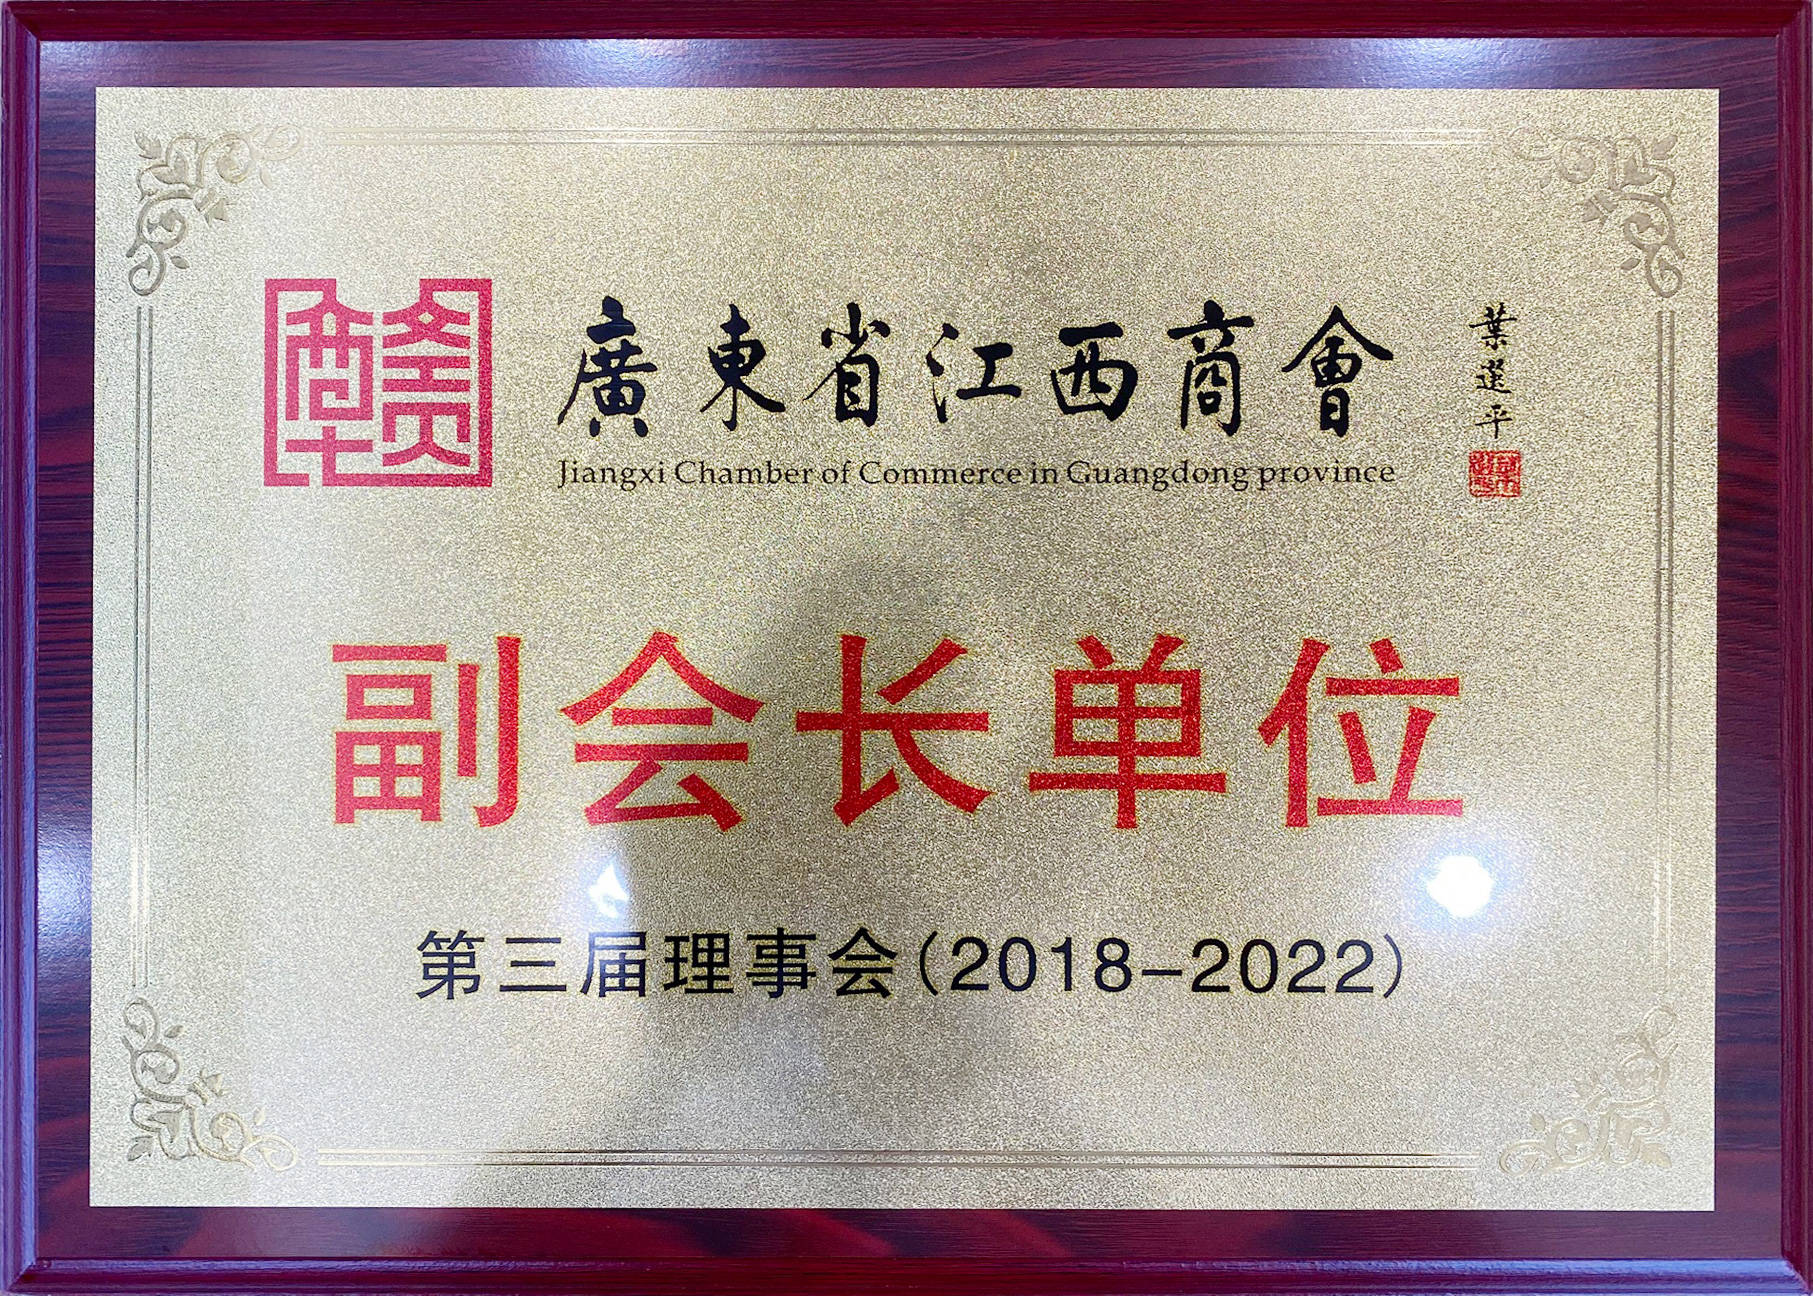 喜讯连连云嘉集团成为广东省江西商会副会长单位